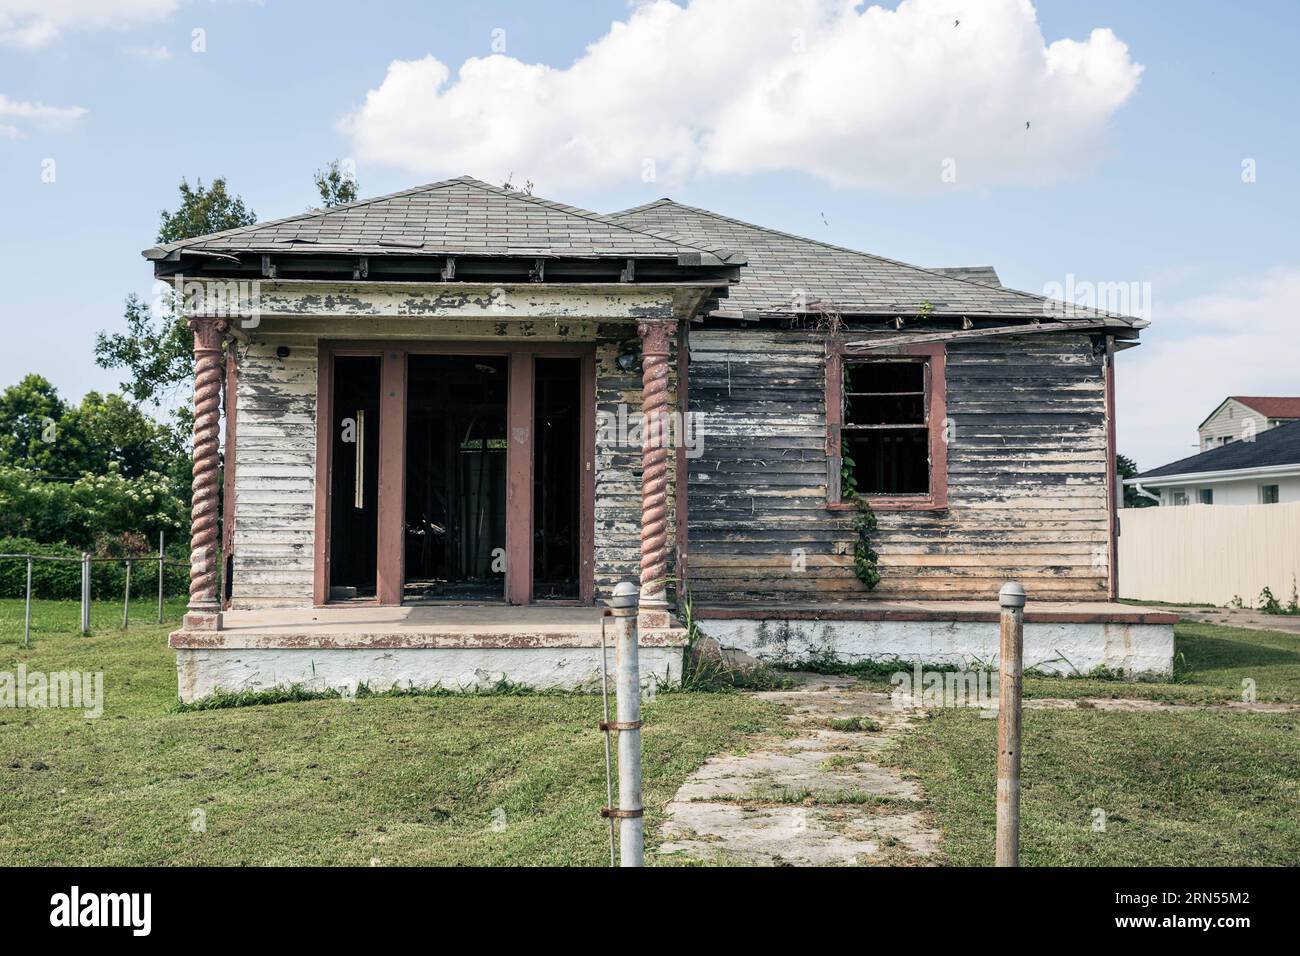 NEW ORLEANS, 10 giugno 2015 -- foto scattata il 10 giugno 2015 mostra una casa abbandonata a Lower Ninth Ward, New Orleans, Louisiana, Stati Uniti. Dall'estate del 2005, il Lower Ninth Ward è diventato un terreno di dumping per cose indesiderate. L'erba selvatica fino all'altezza degli adulti prevale nella zona, tra cui i relitti di case abbandonate si stagliano in modo minaccioso. Dieci anni dopo l'uragano Katrina ha messo in ginocchio New Orleans e ha lasciato un'impronta emotiva in tutti gli Stati Uniti, mentre la gente ha visto come il governo degli Stati Uniti non è riuscito a rispondere prontamente, una comunità prevalentemente afro-americana Foto Stock